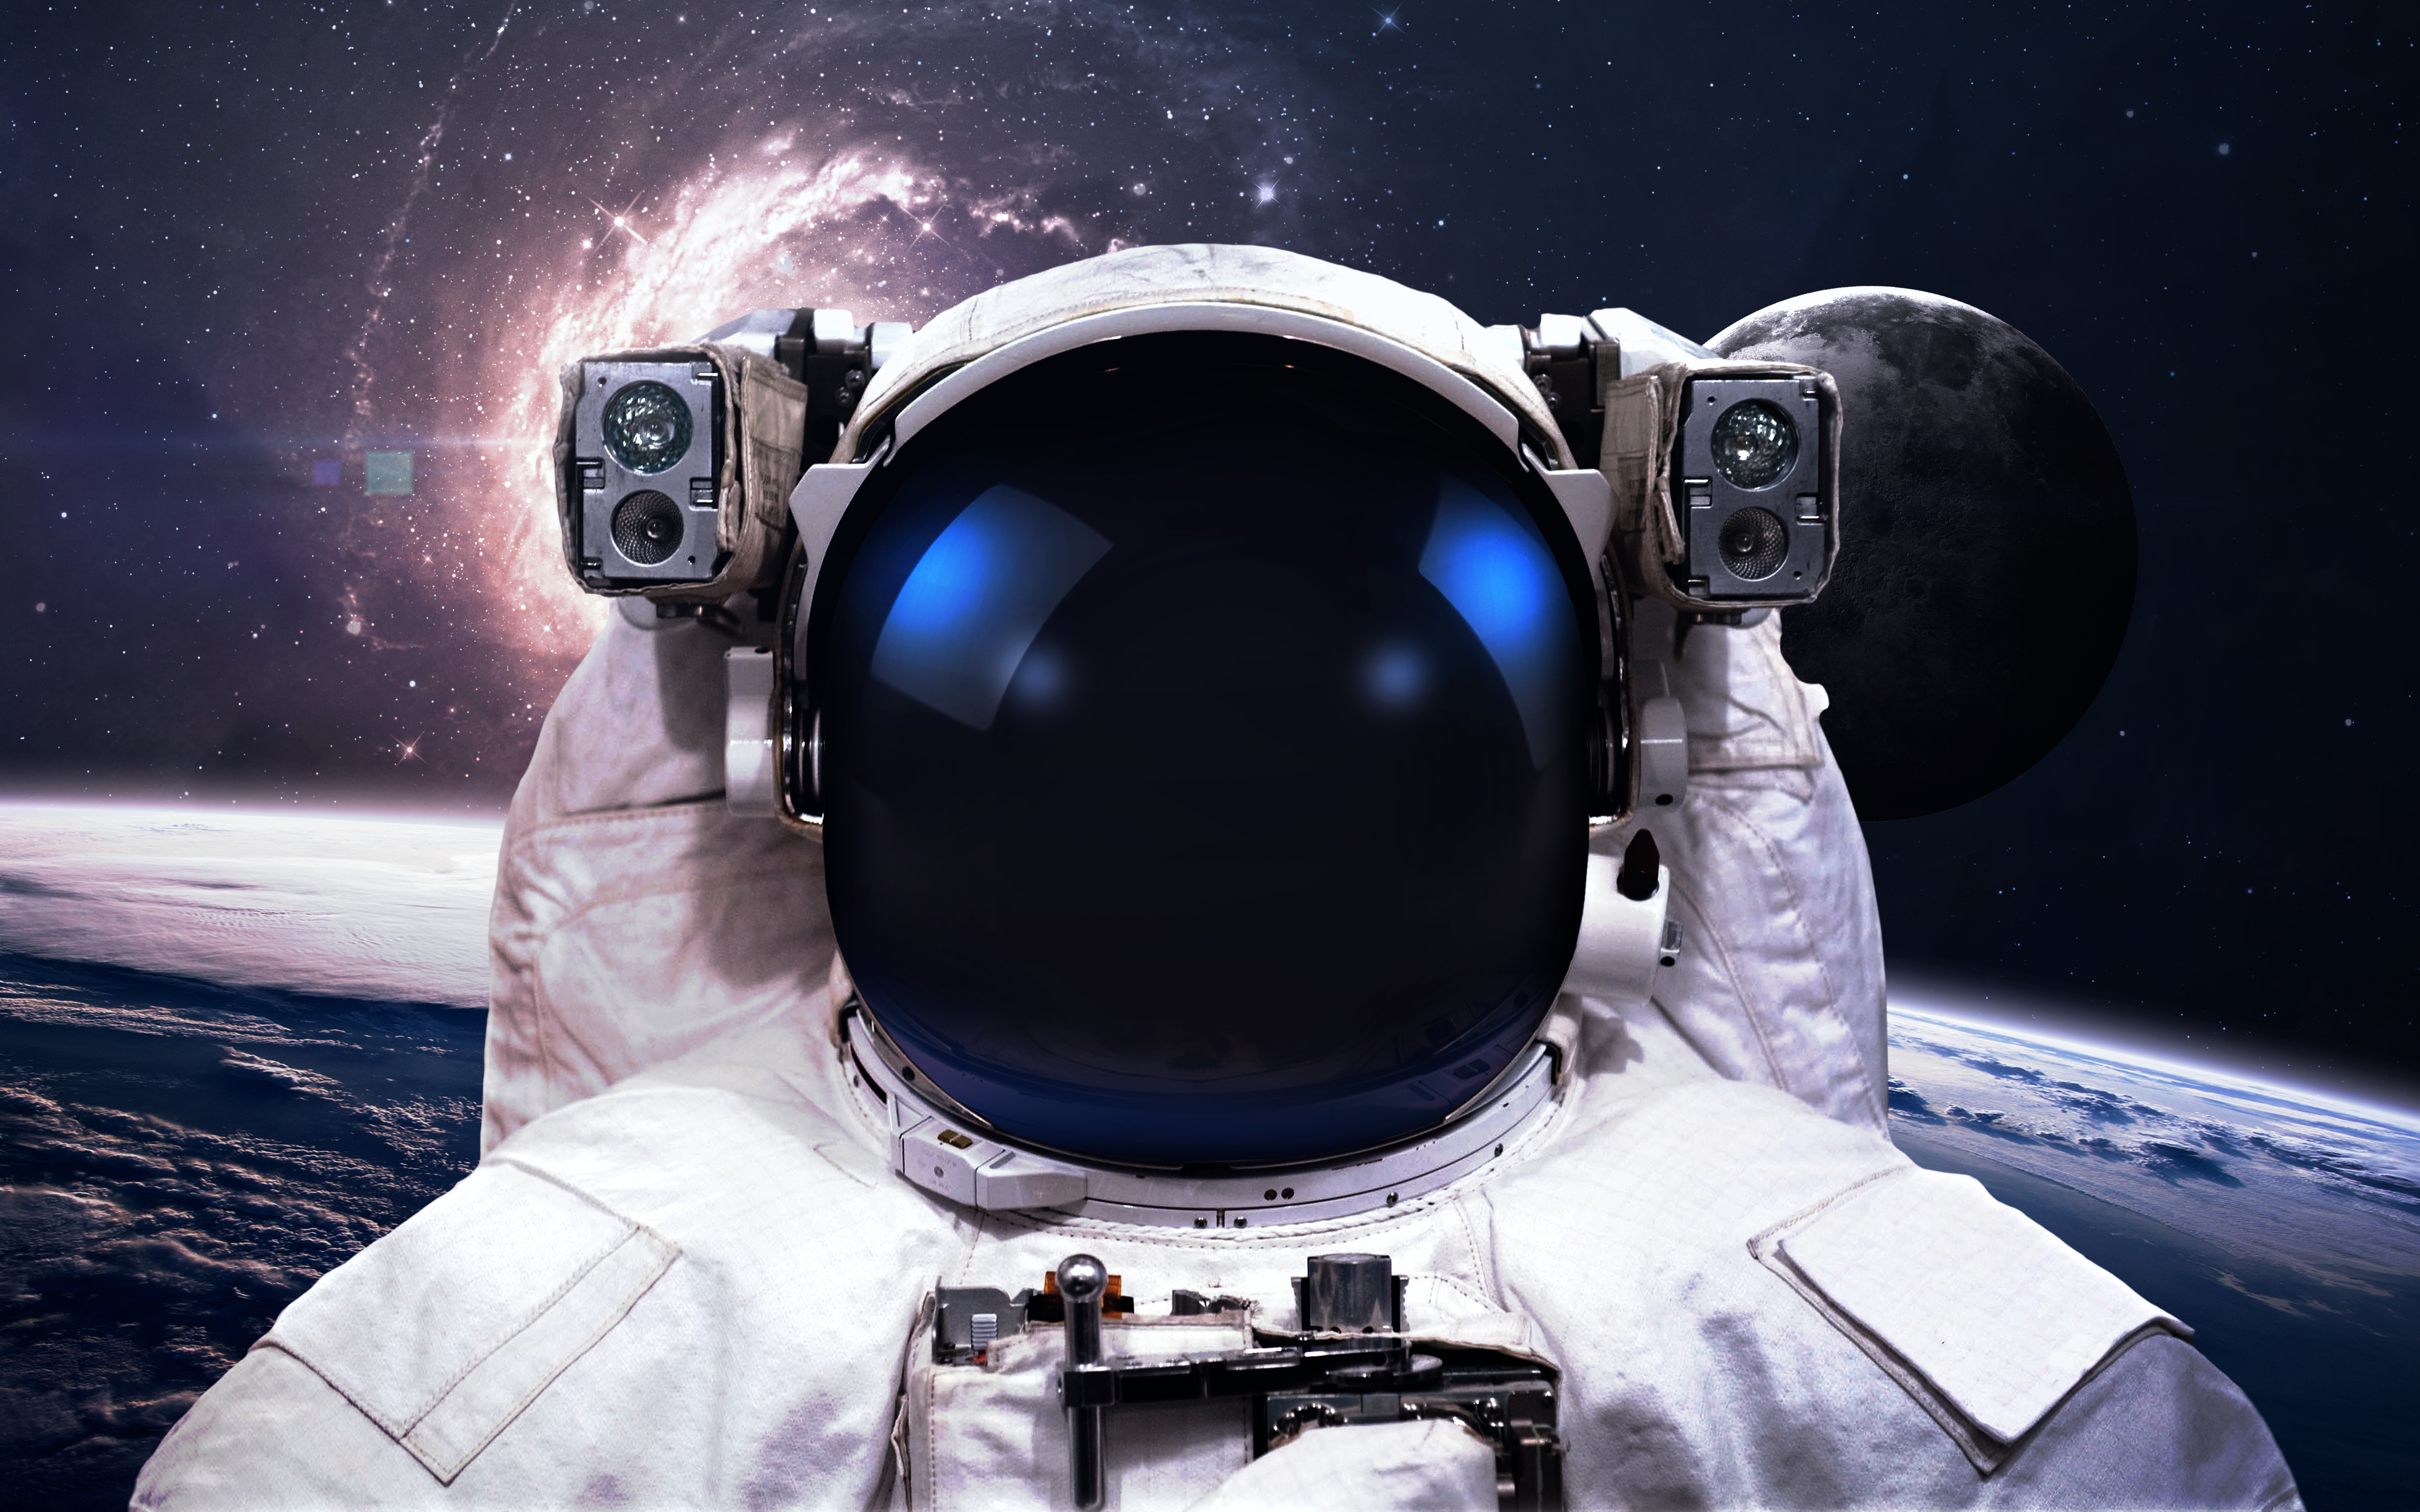 Descarga gratuita de fondo de pantalla para móvil de Estrellas, Espacio, Ciencia Ficción, Astronauta.